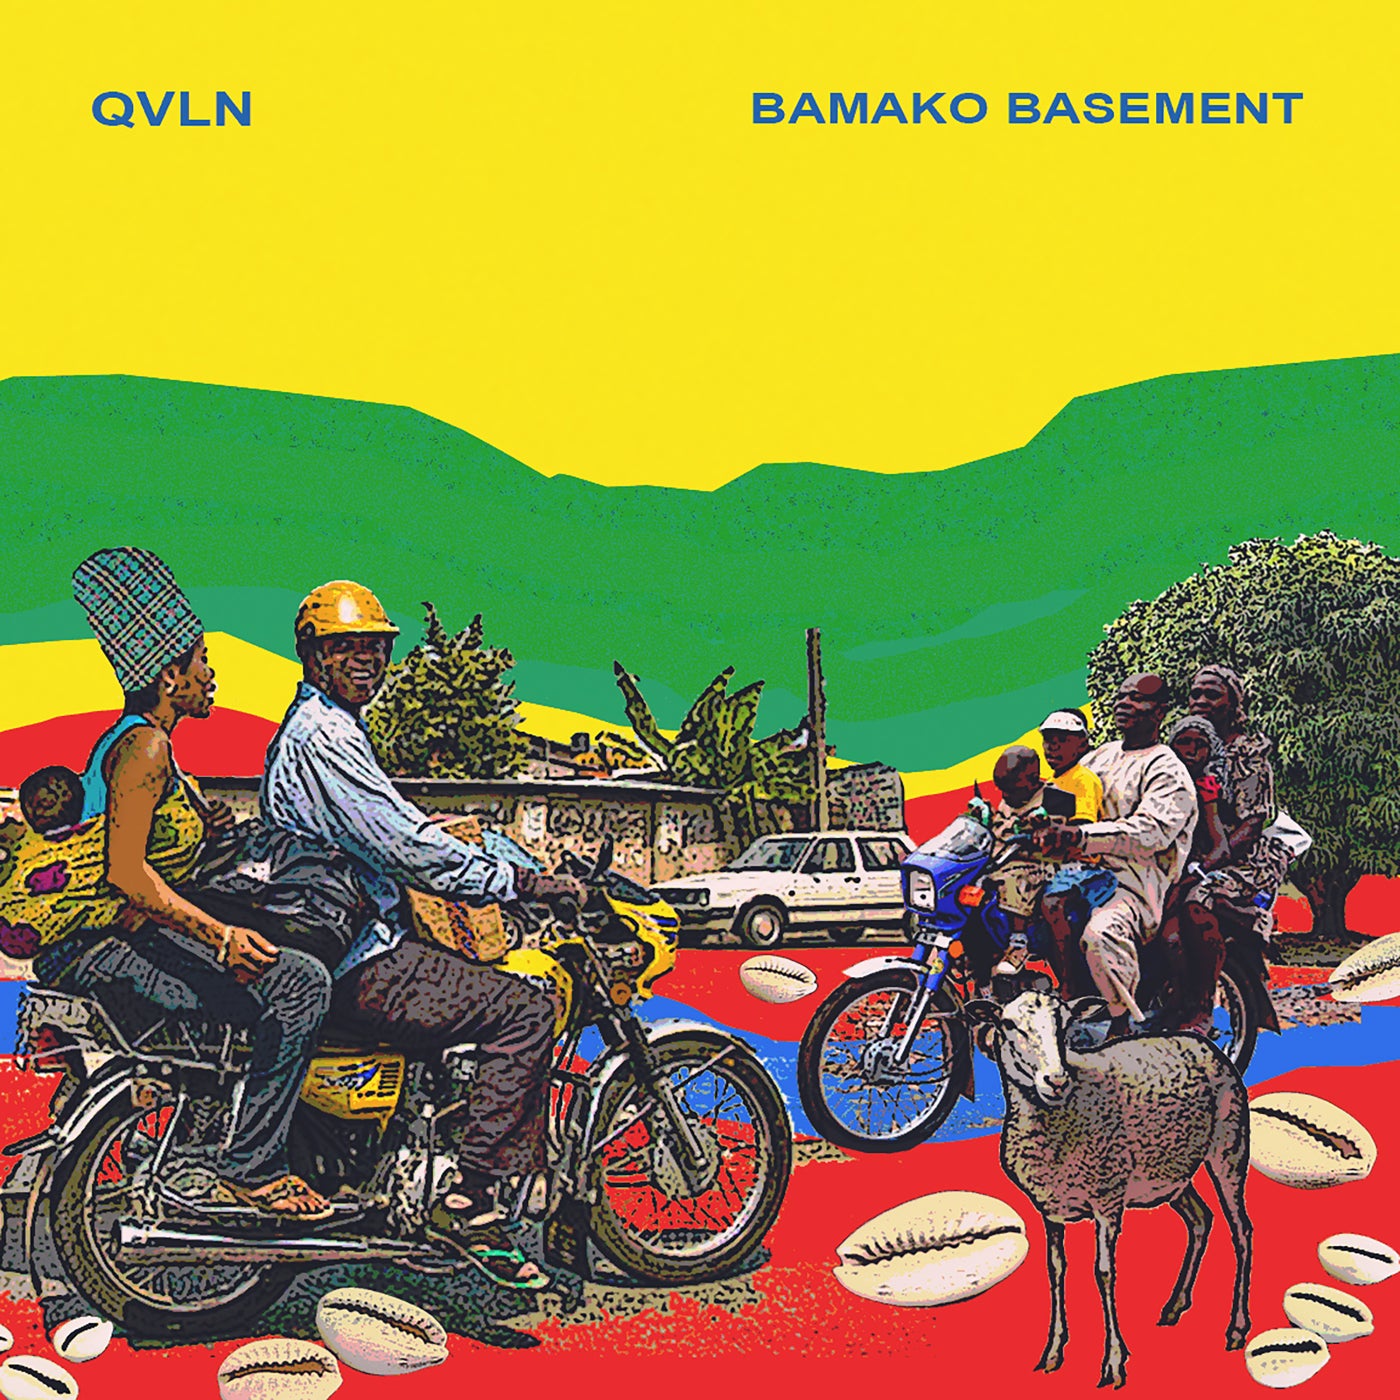 Bamako Basement